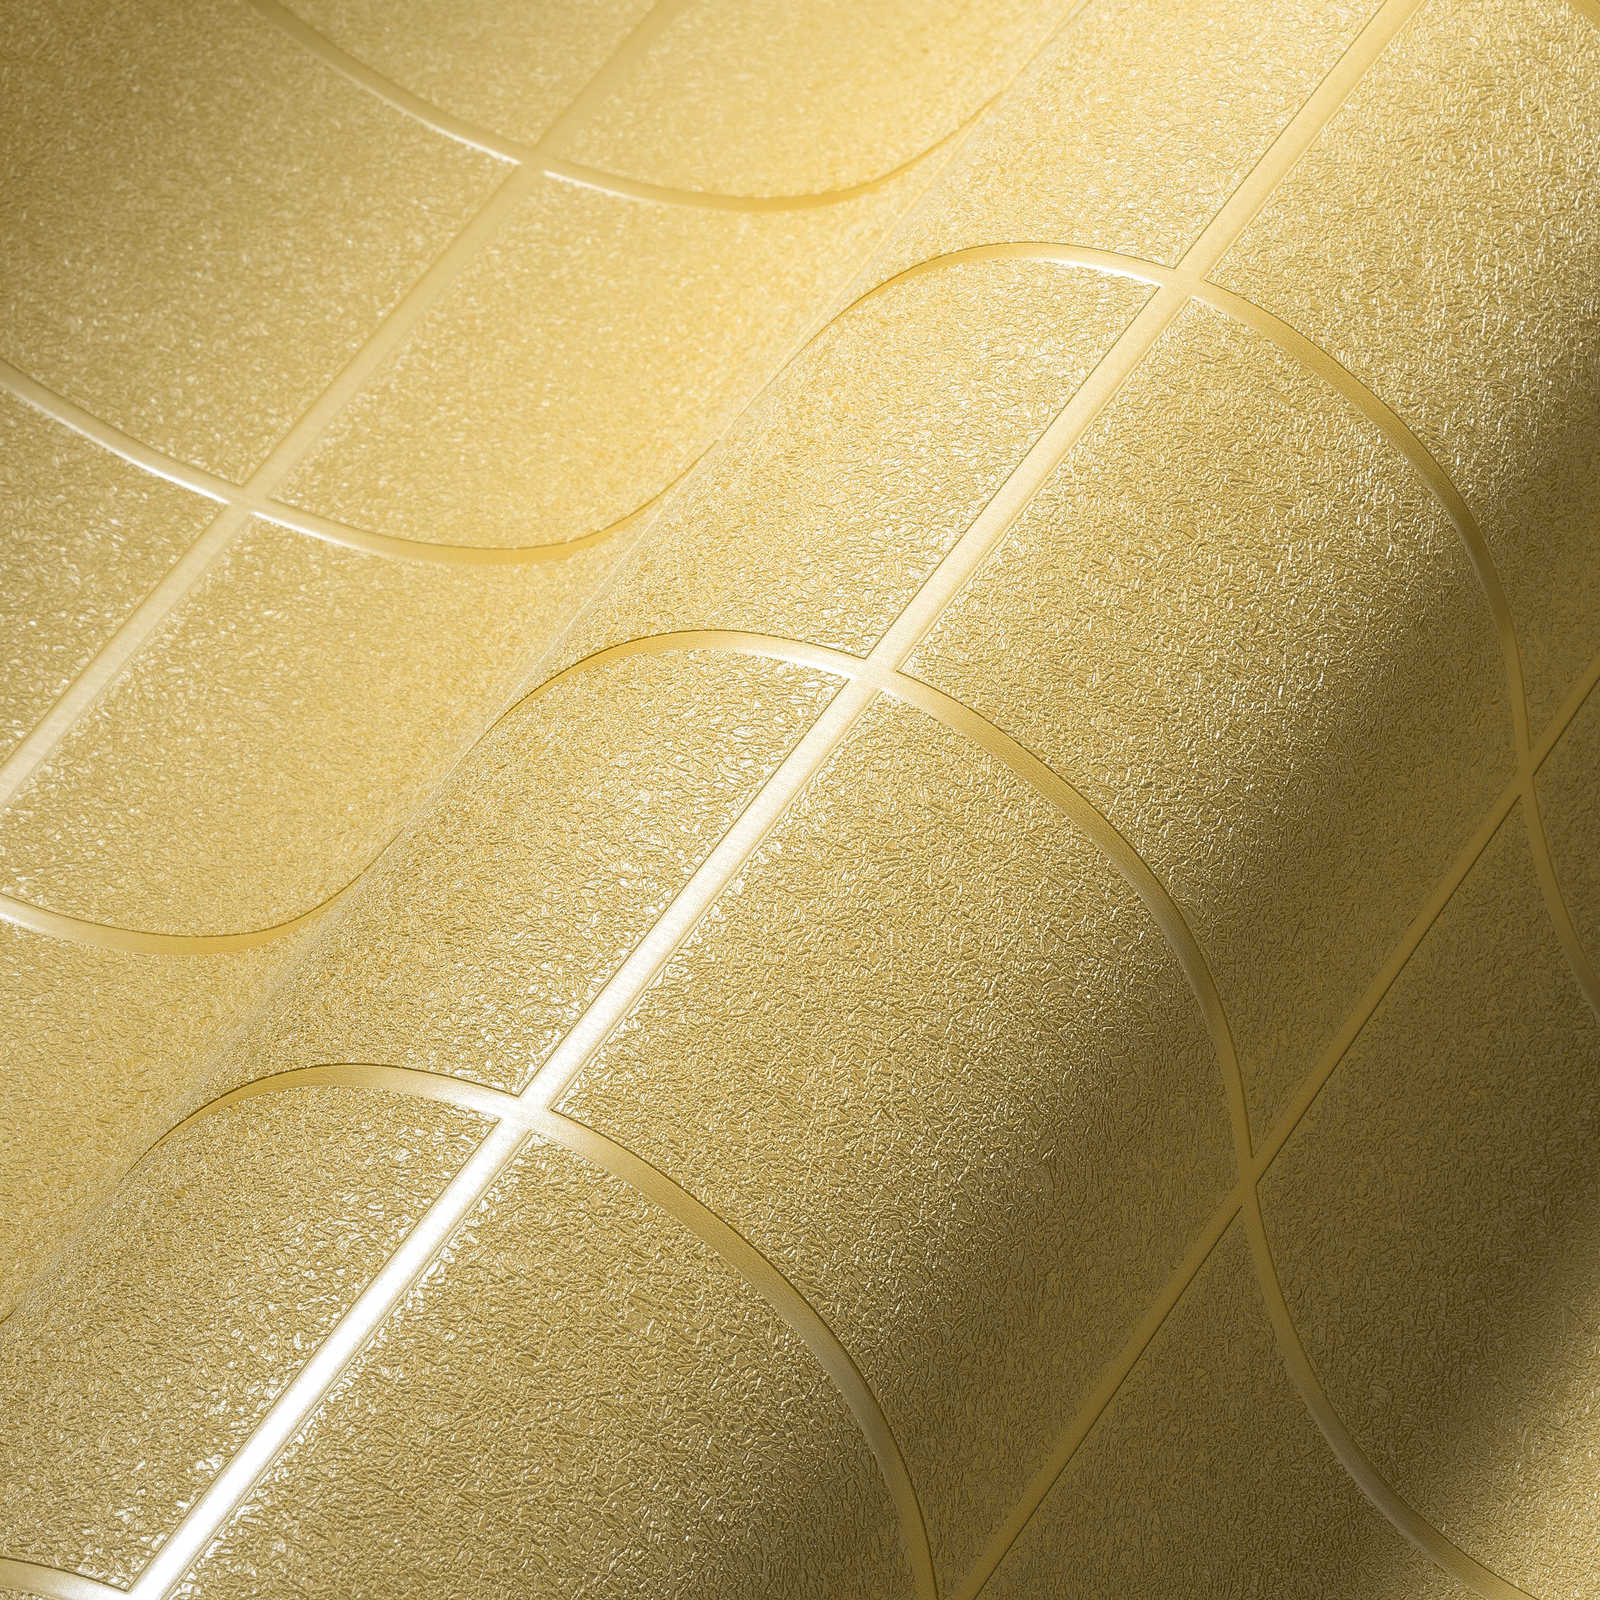             Papier peint motif carreaux, joints sombres & effet 3D - or, jaune
        